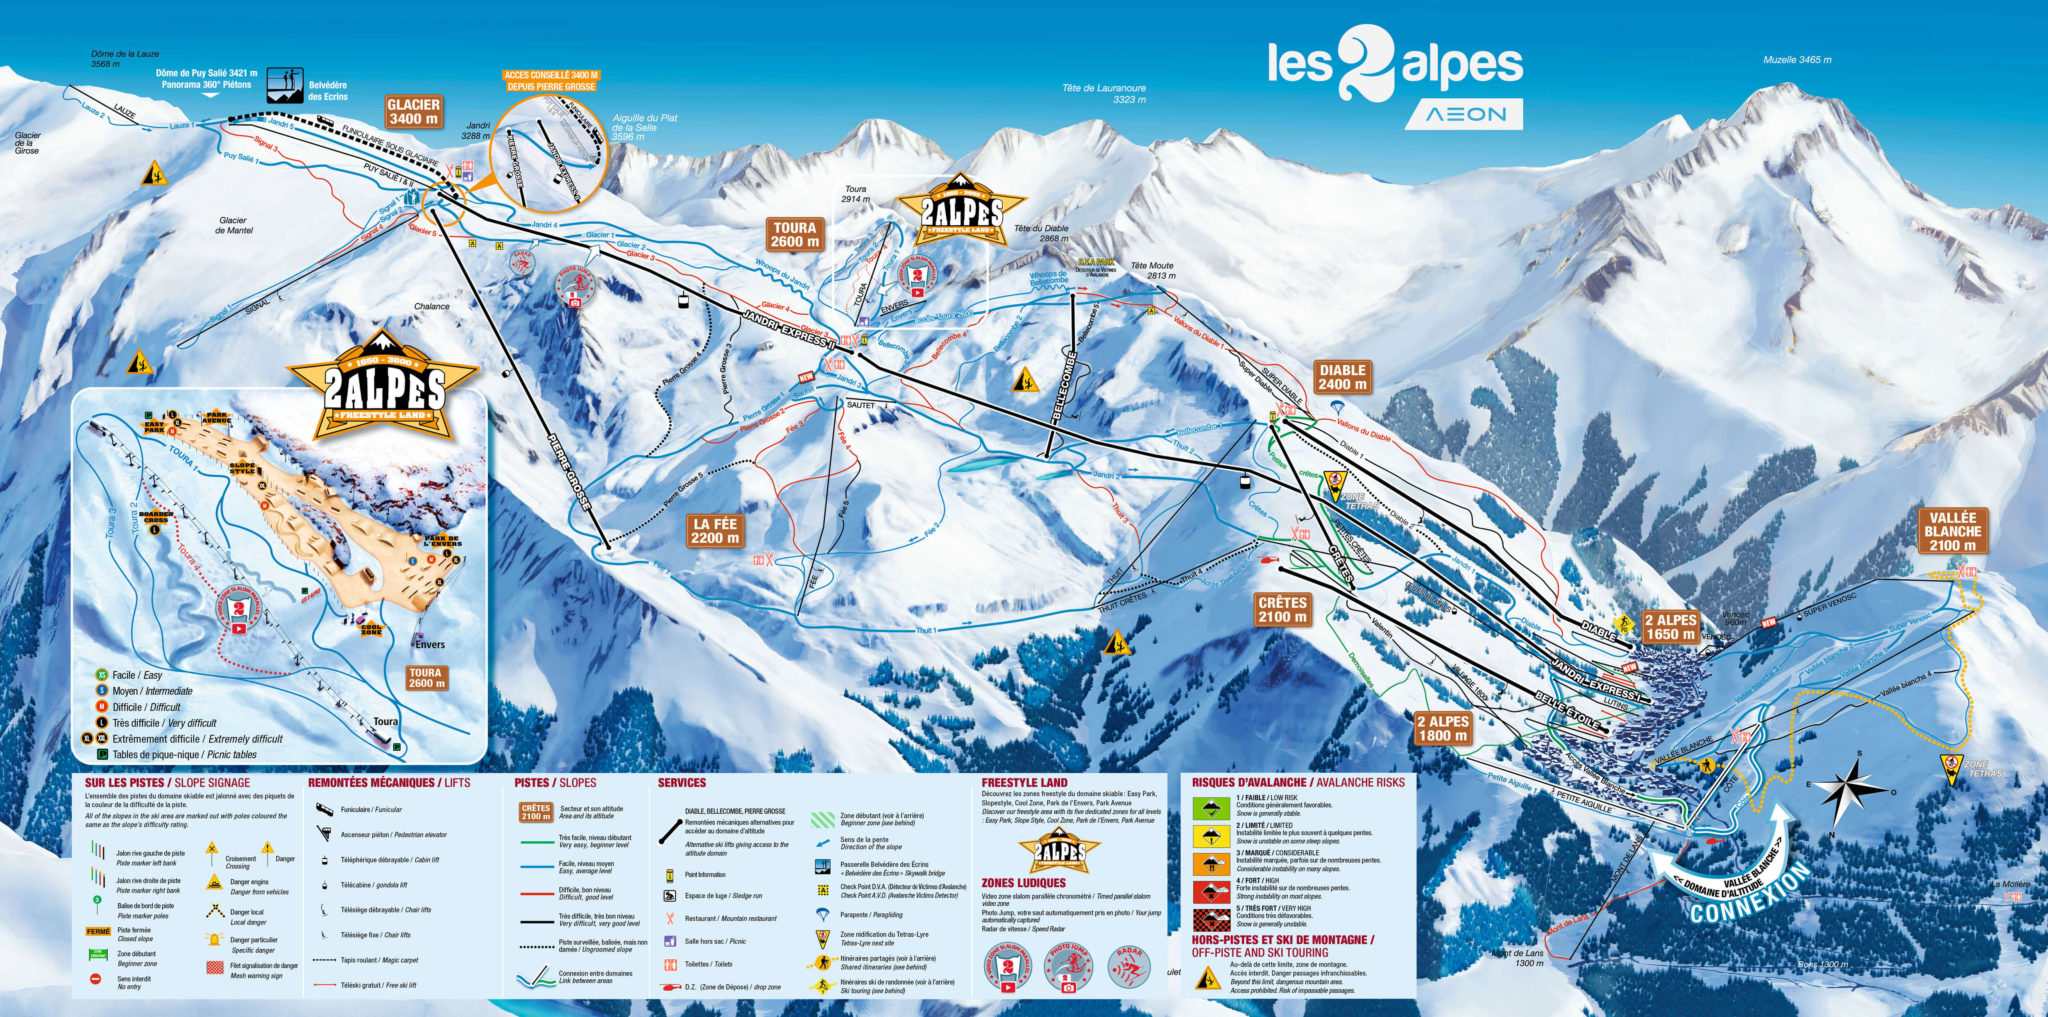 Les Deux Alpes Review: Glaciers and Epic Pistes - Gone Travelling